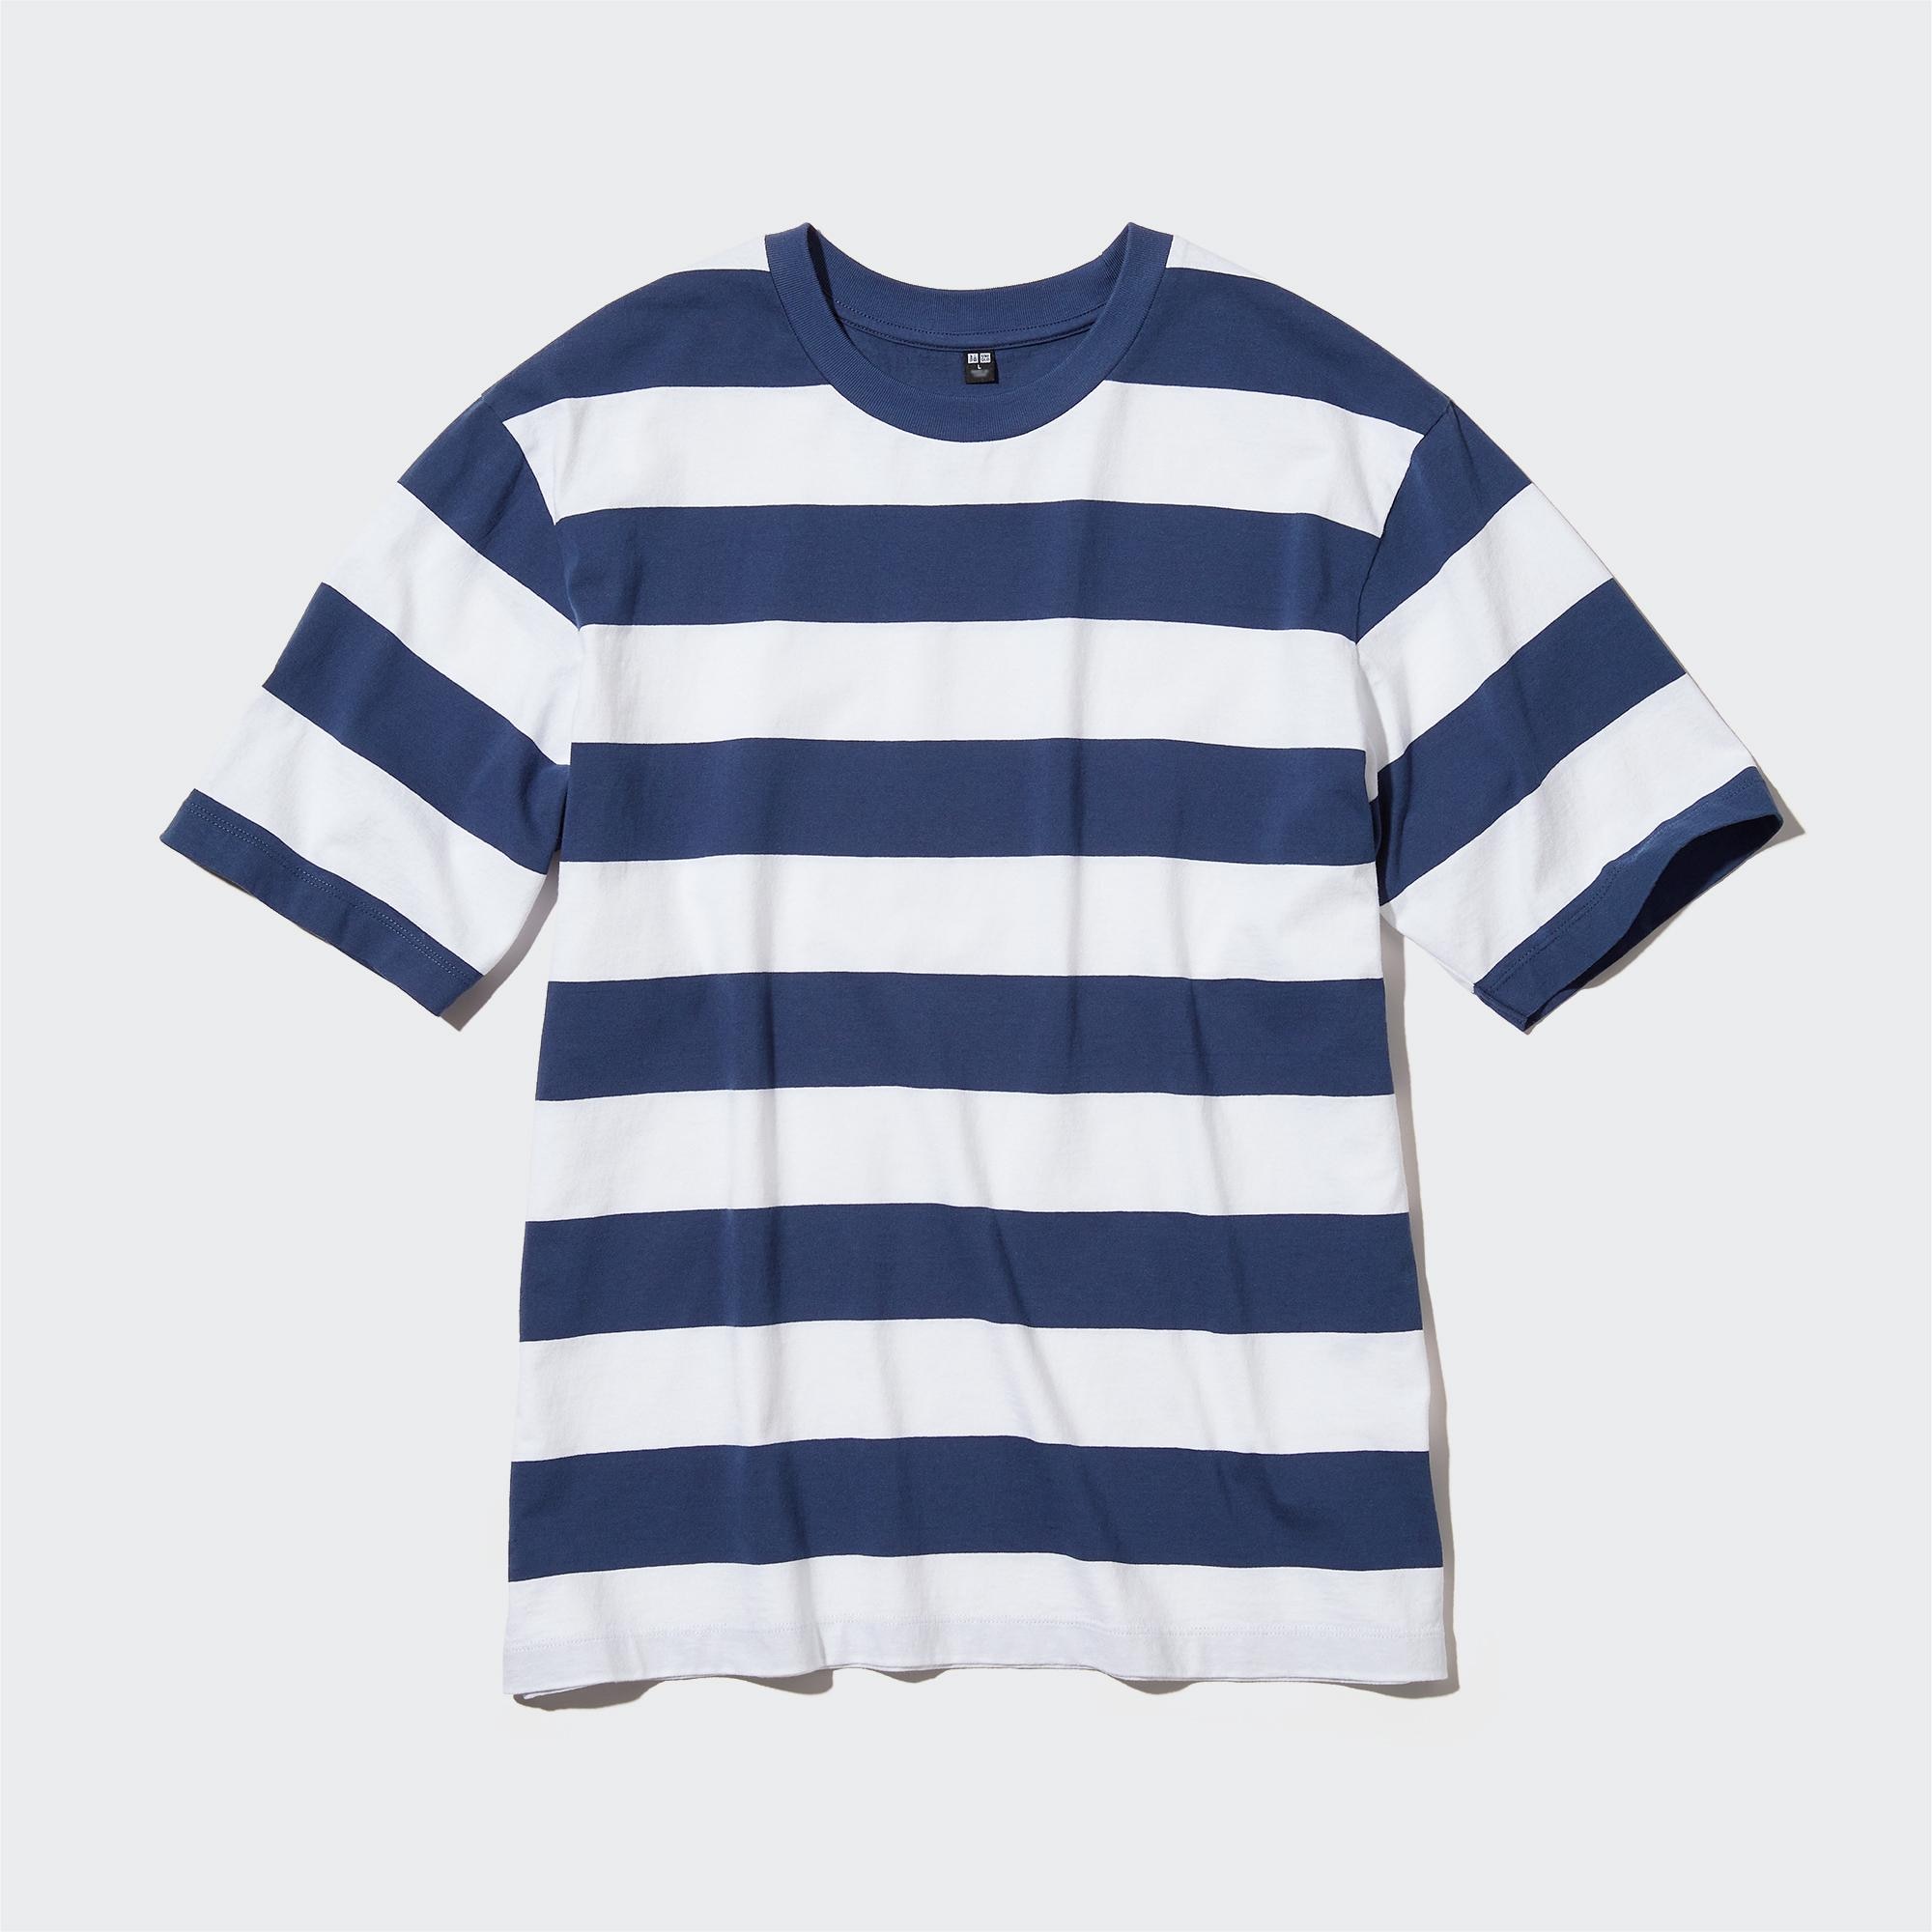 693円 再再販 tシャツ Tシャツ レギュラーフィットボーダーTシャツ 半袖